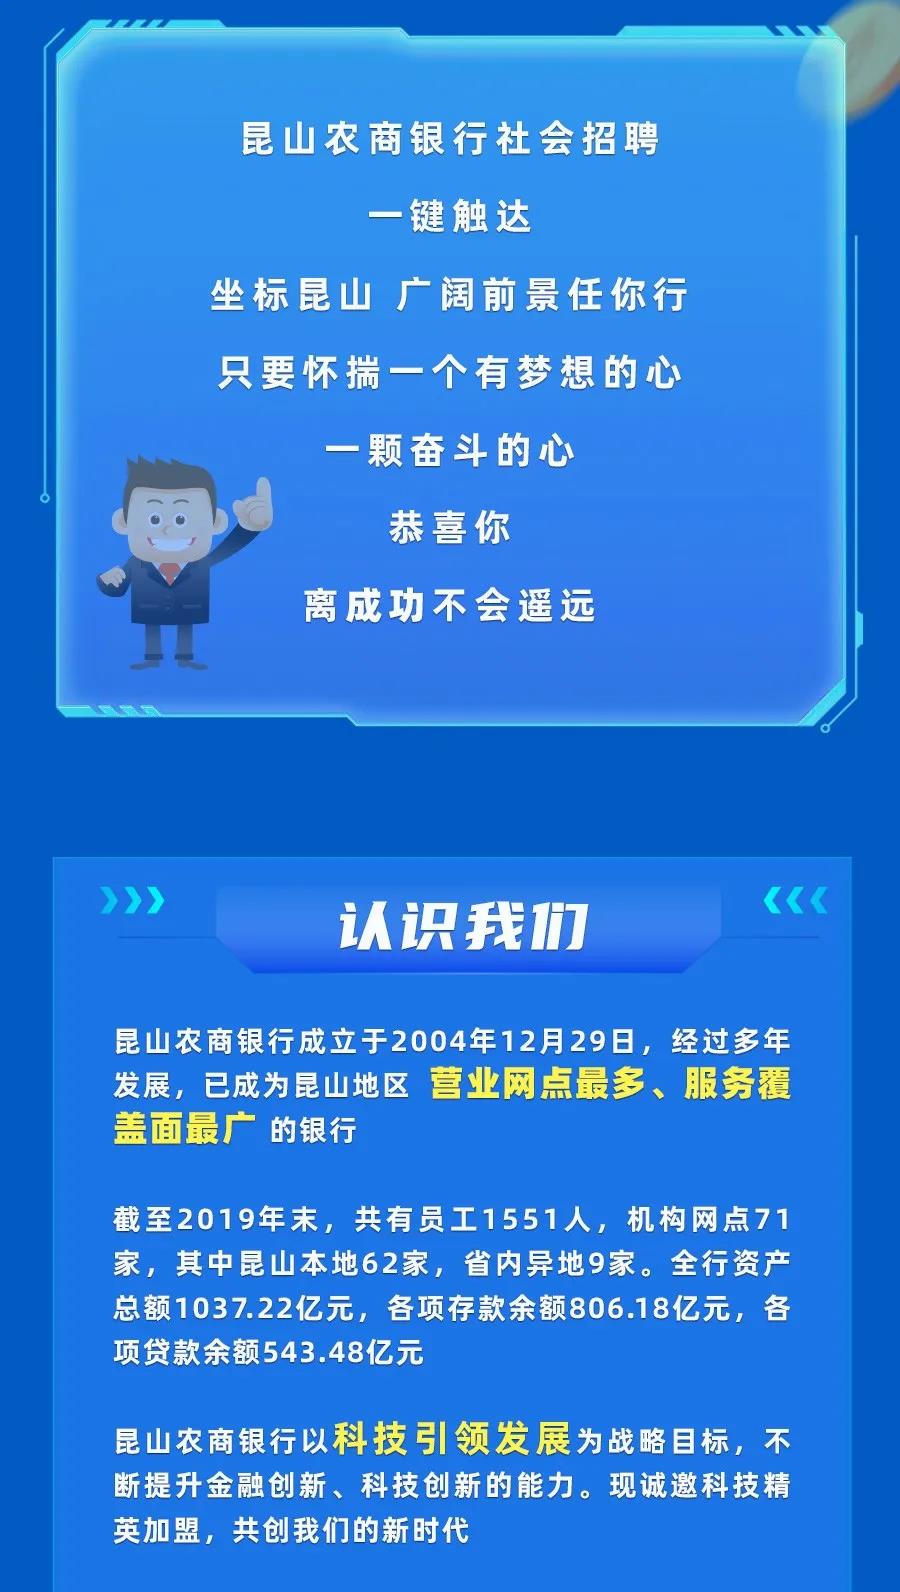 [江苏]2020年昆山农商银行信息技术部社会招聘启事